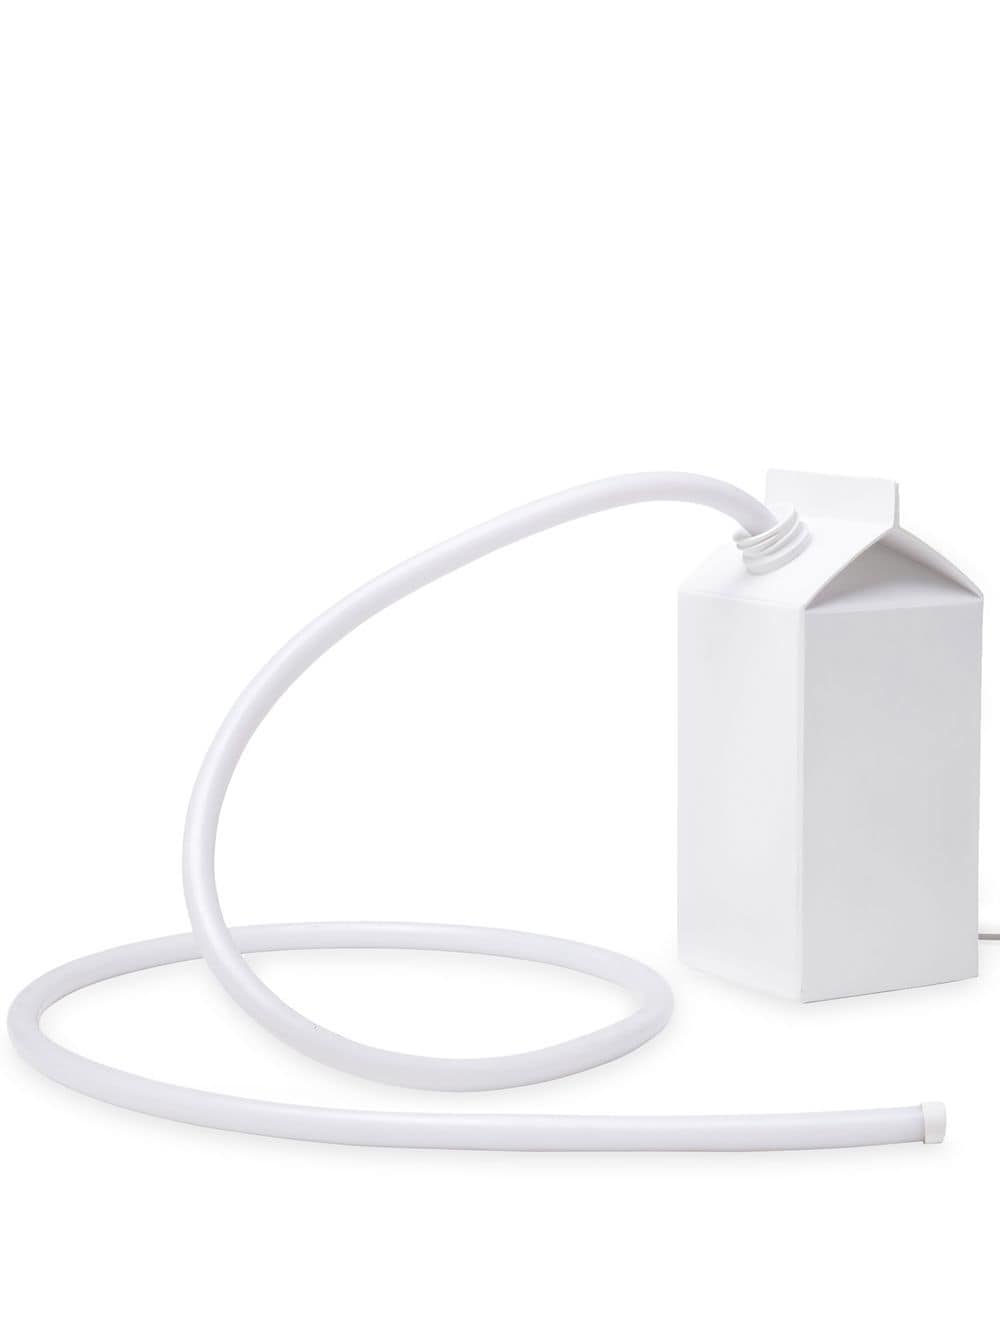 Seletti Milkglow Lampe mit EU-Stecker - Weiß von Seletti